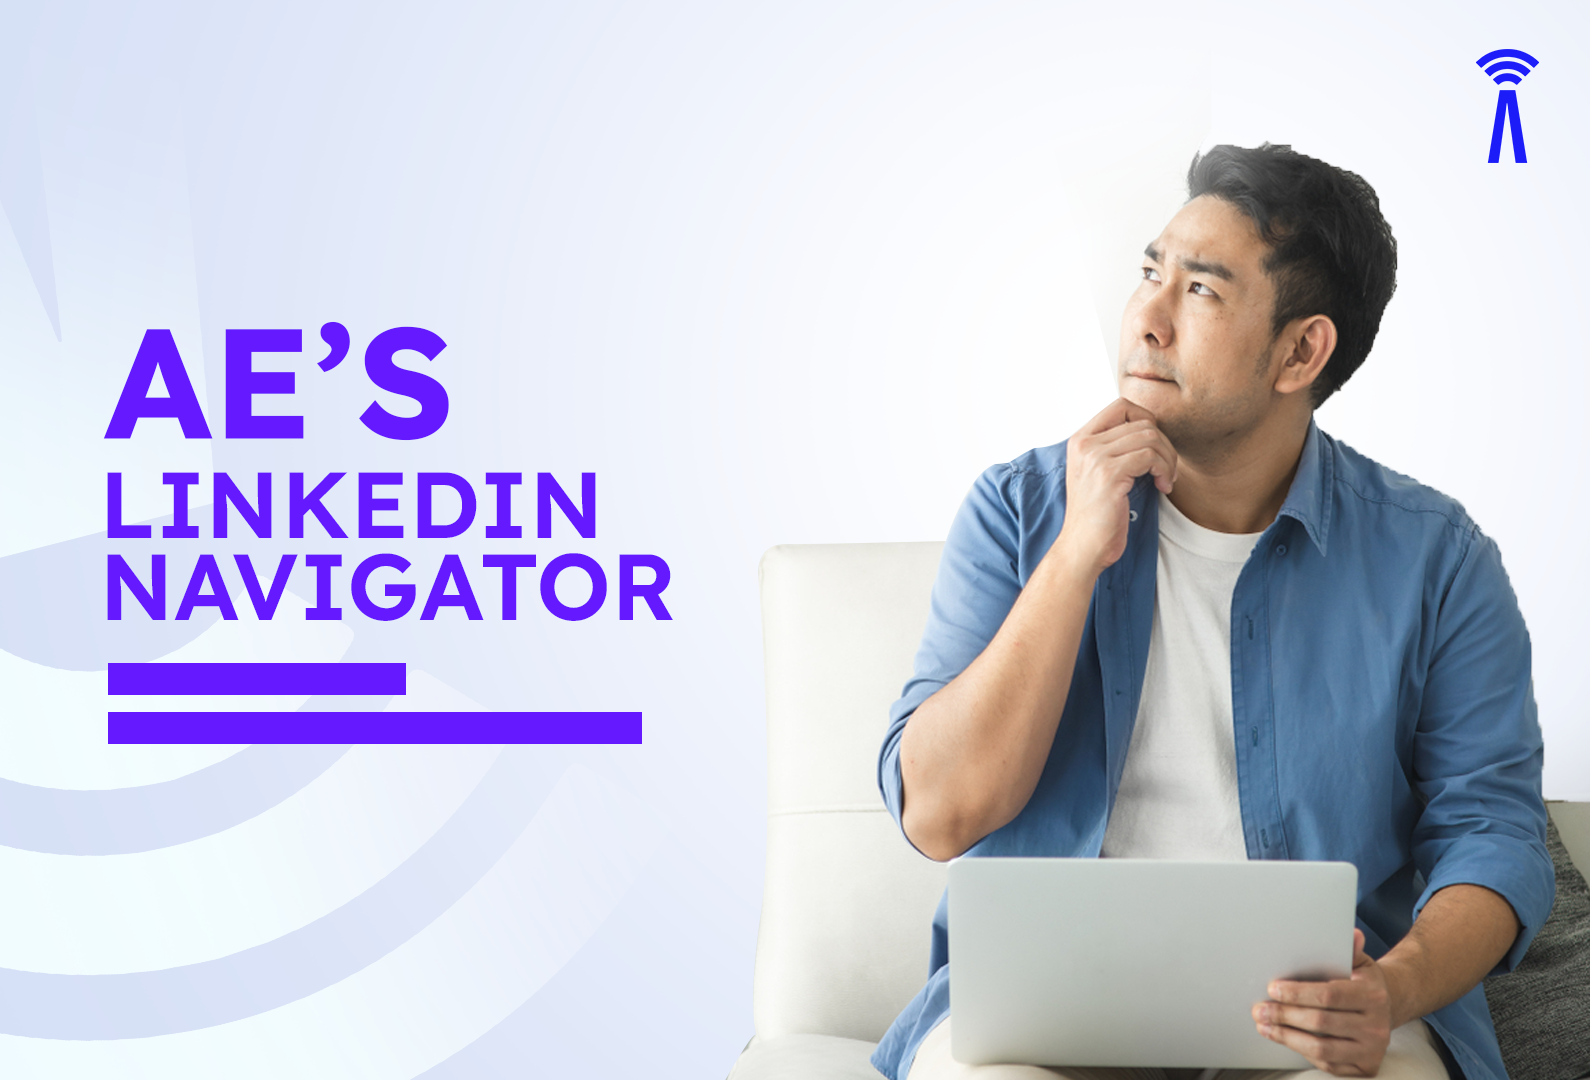 AE’s LinkedIn Navigator